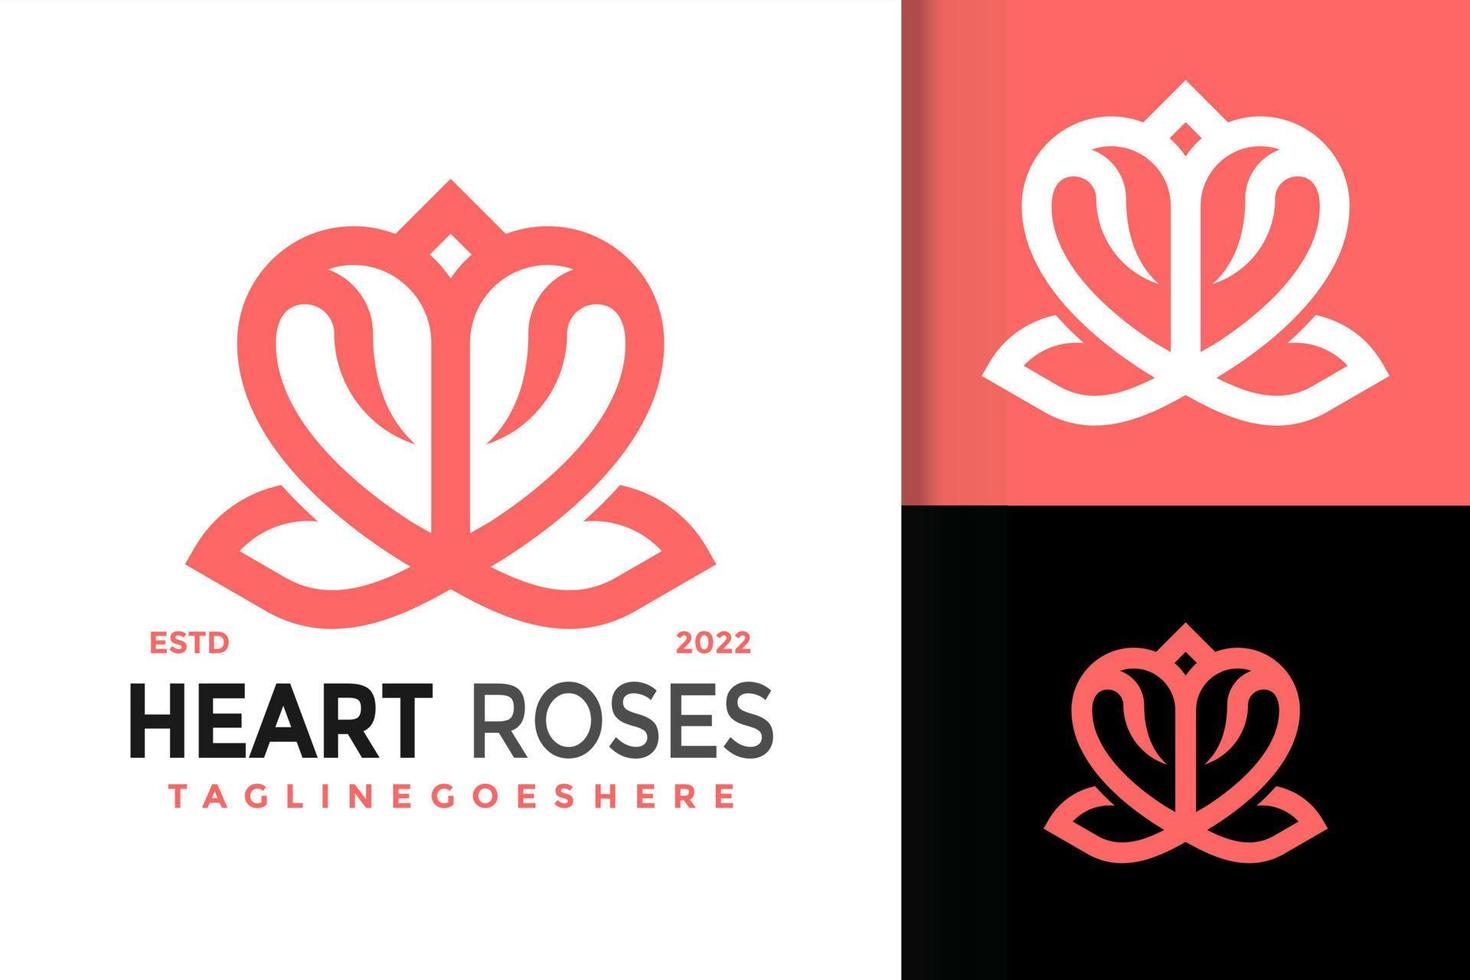 création de logo coeur roses, vecteur de logos d'identité de marque, logo moderne, modèle d'illustration vectorielle de dessins de logo